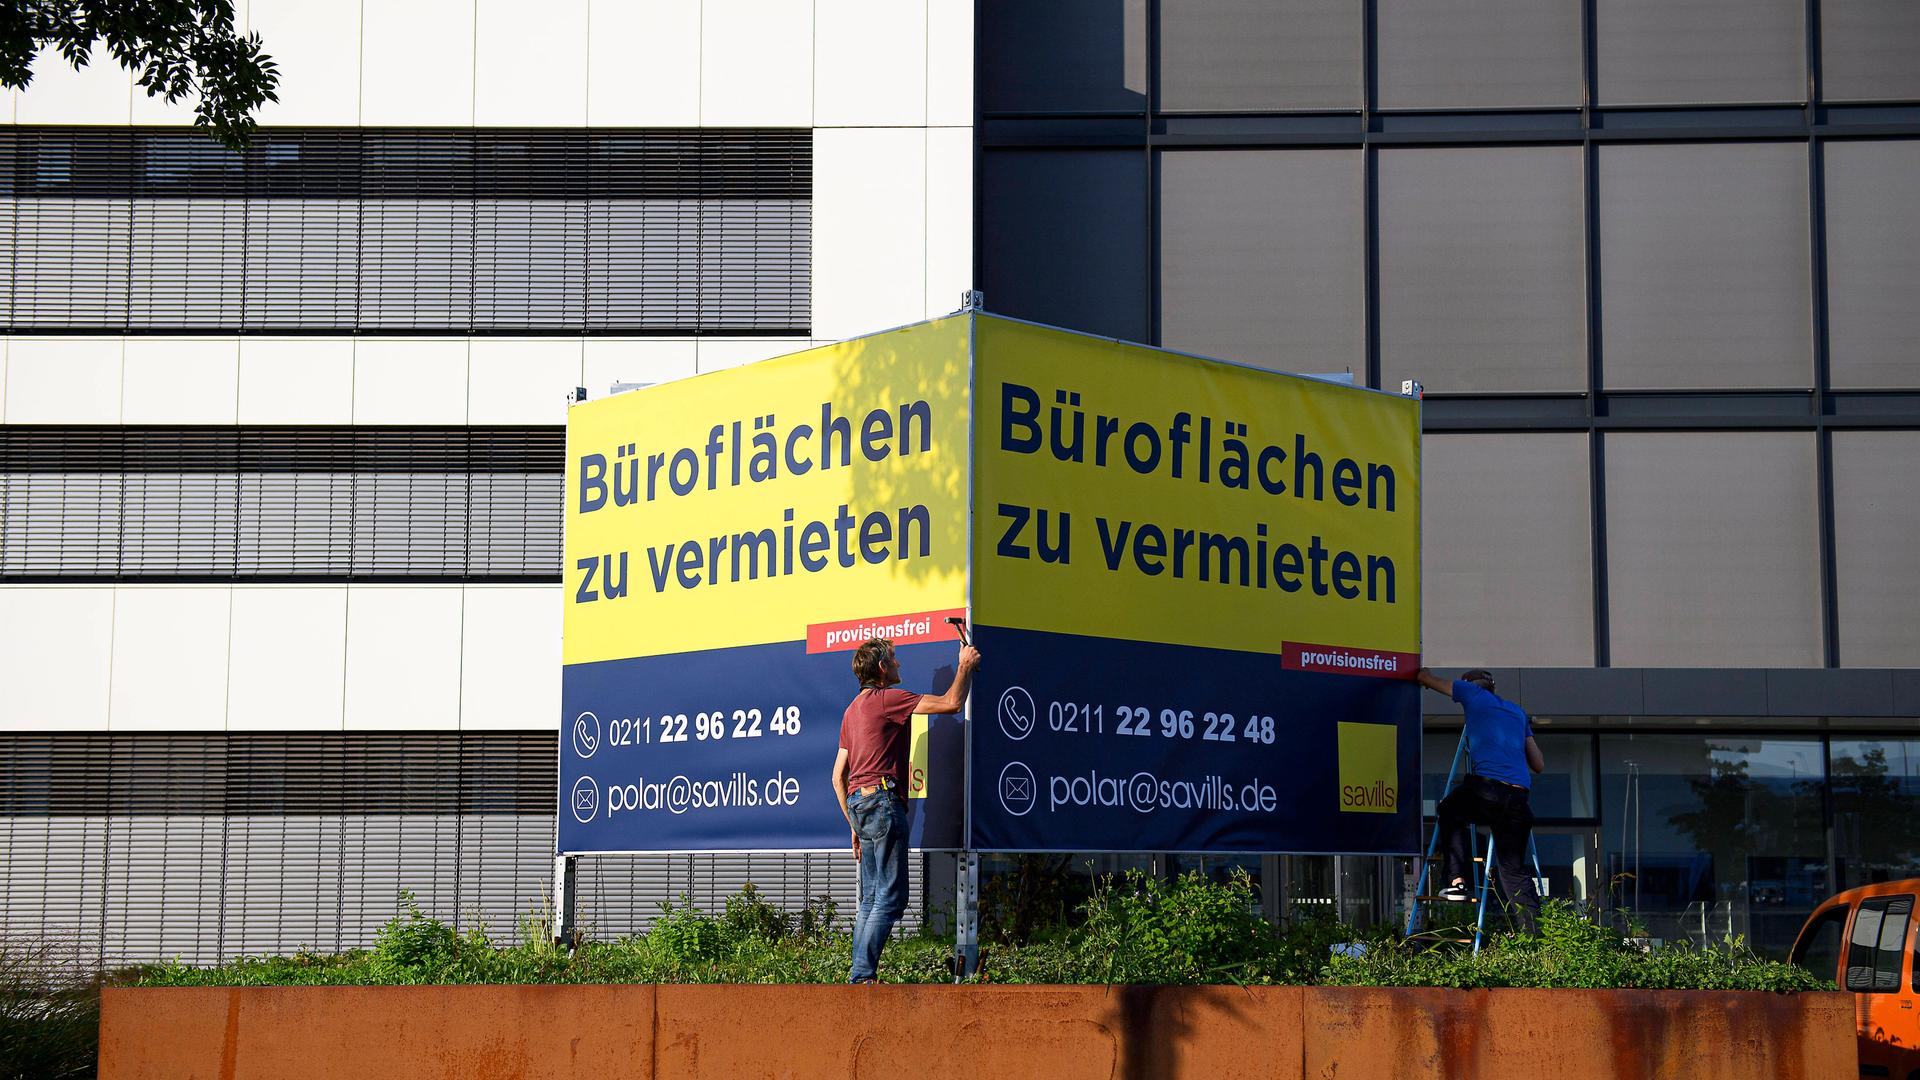 Ein Mann steht vor einem großen Schild an einem Bürogebäude, auf dem steht: "Büroflächen zu vermieten".